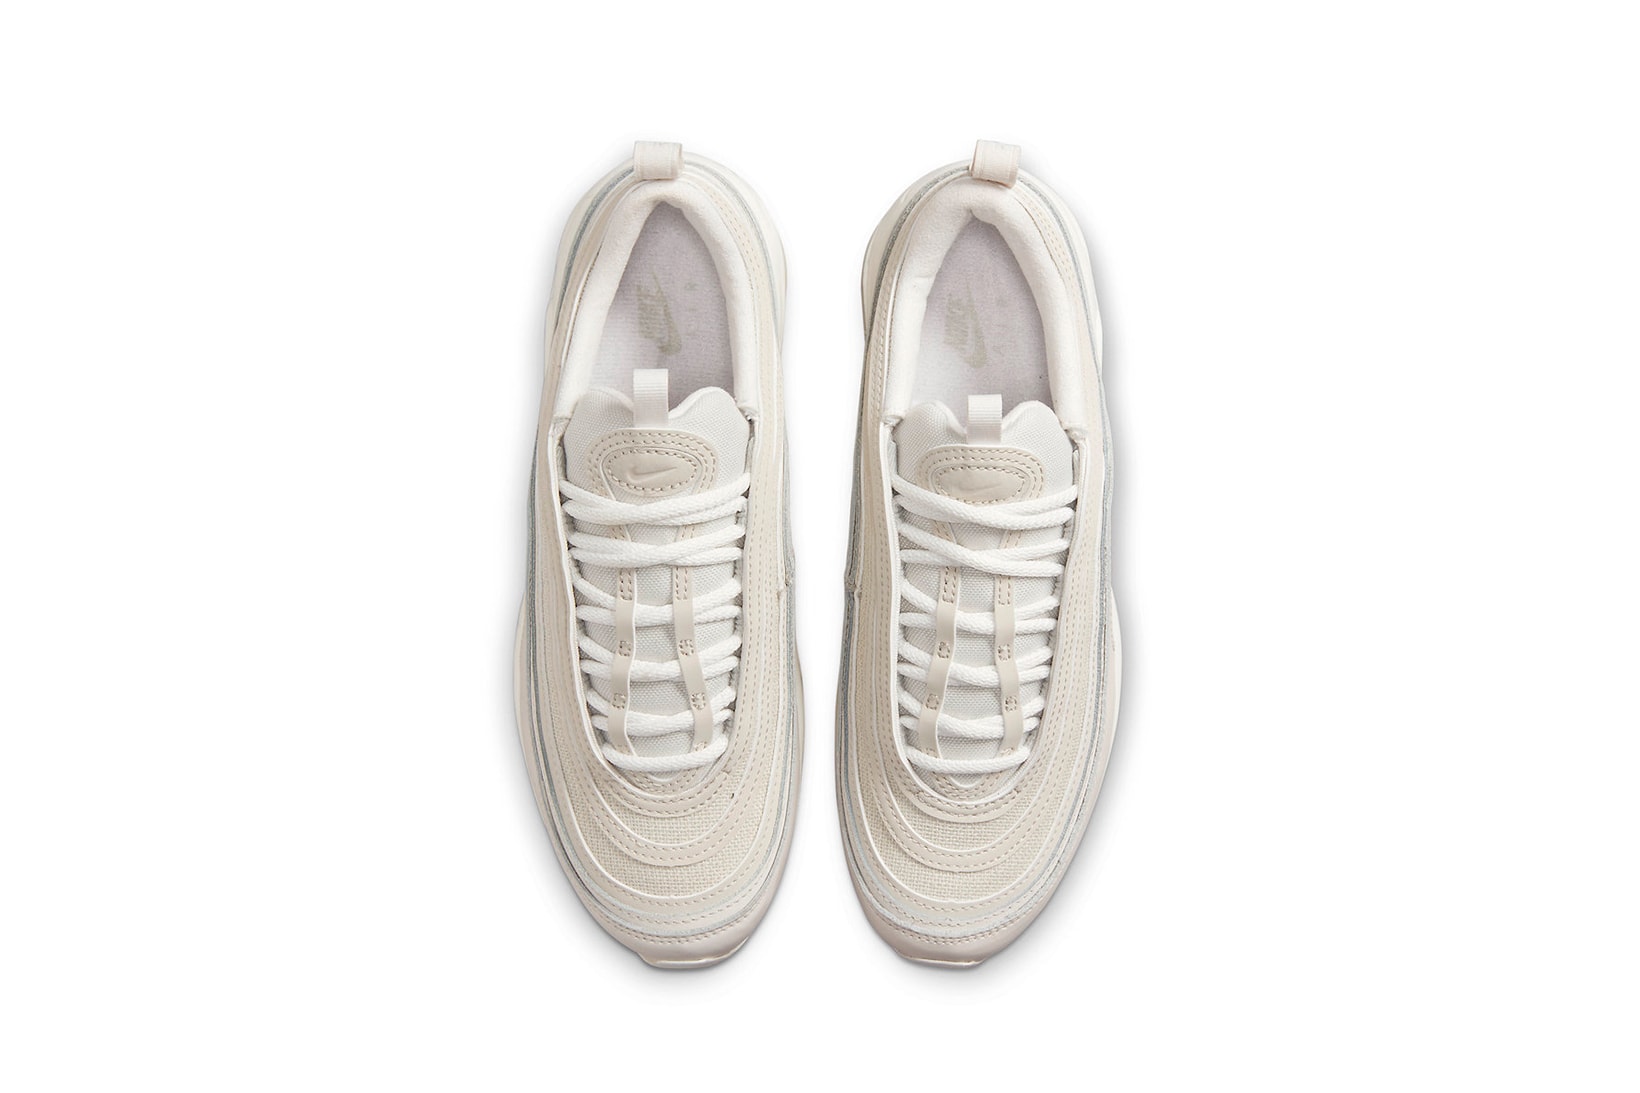 Nike Air Max 97 White Tan Beige Womens Sneakers Kicks Footwear Shoes